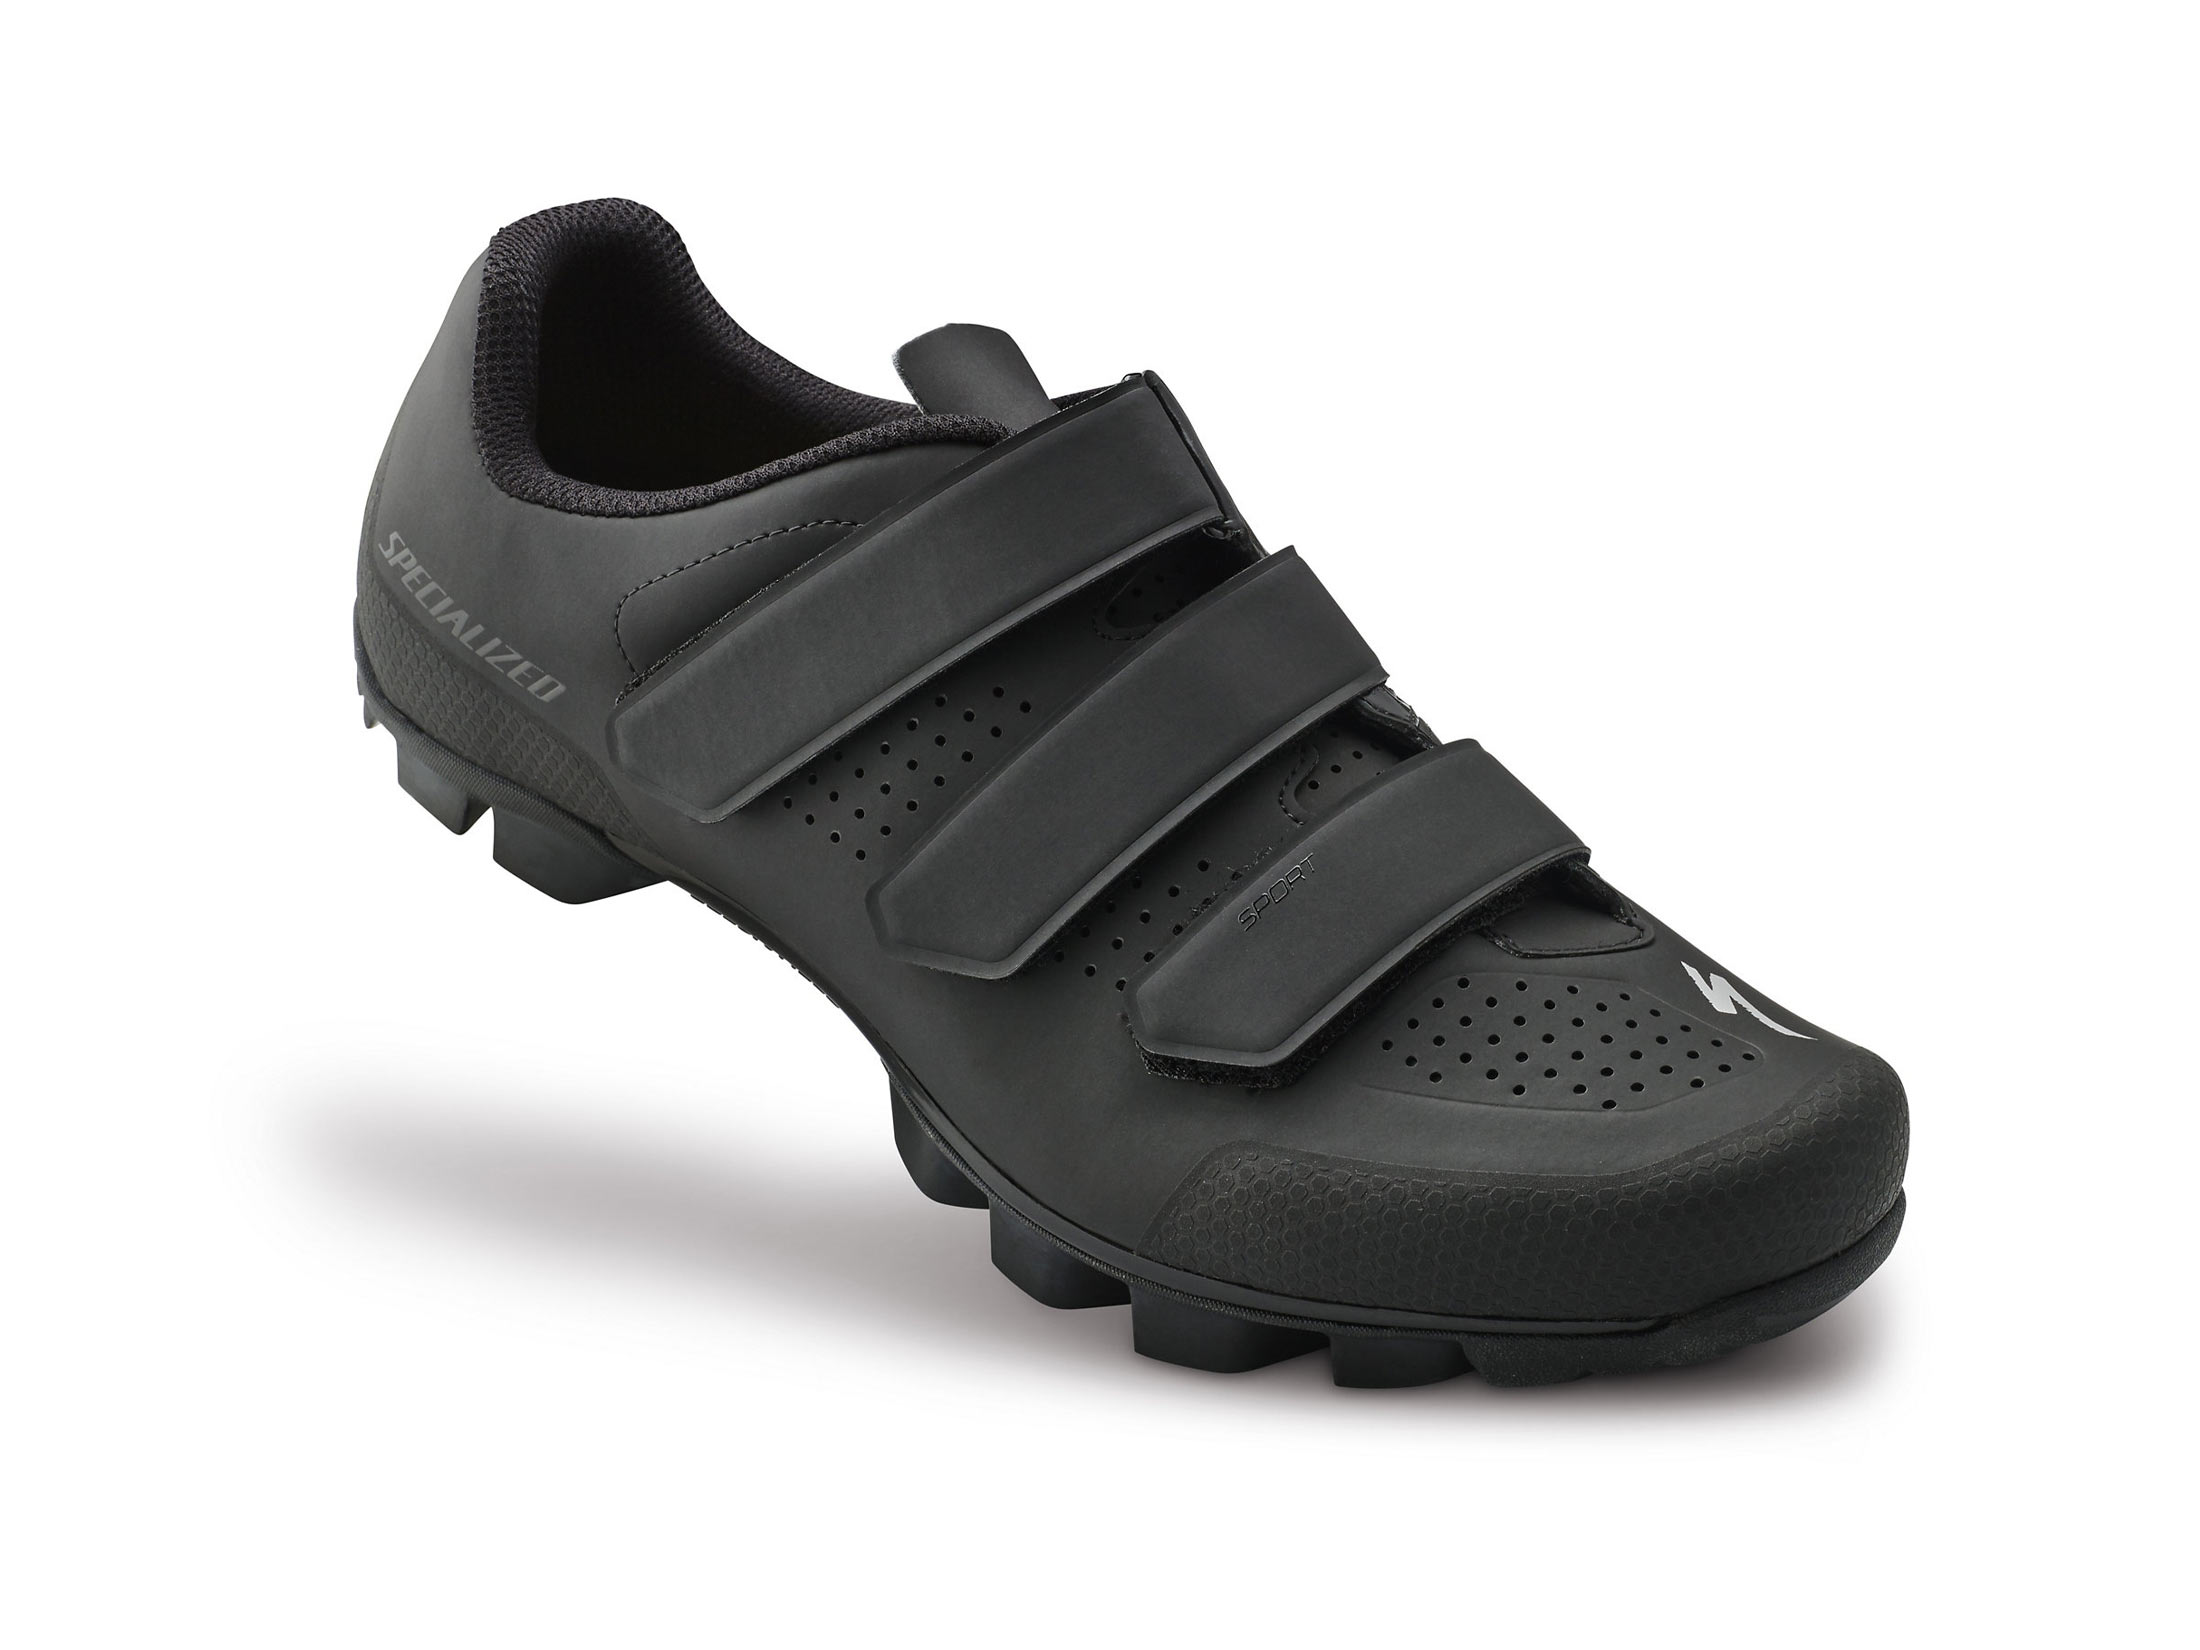 Παπούτσια Specialized Sport MTB - Black (47)